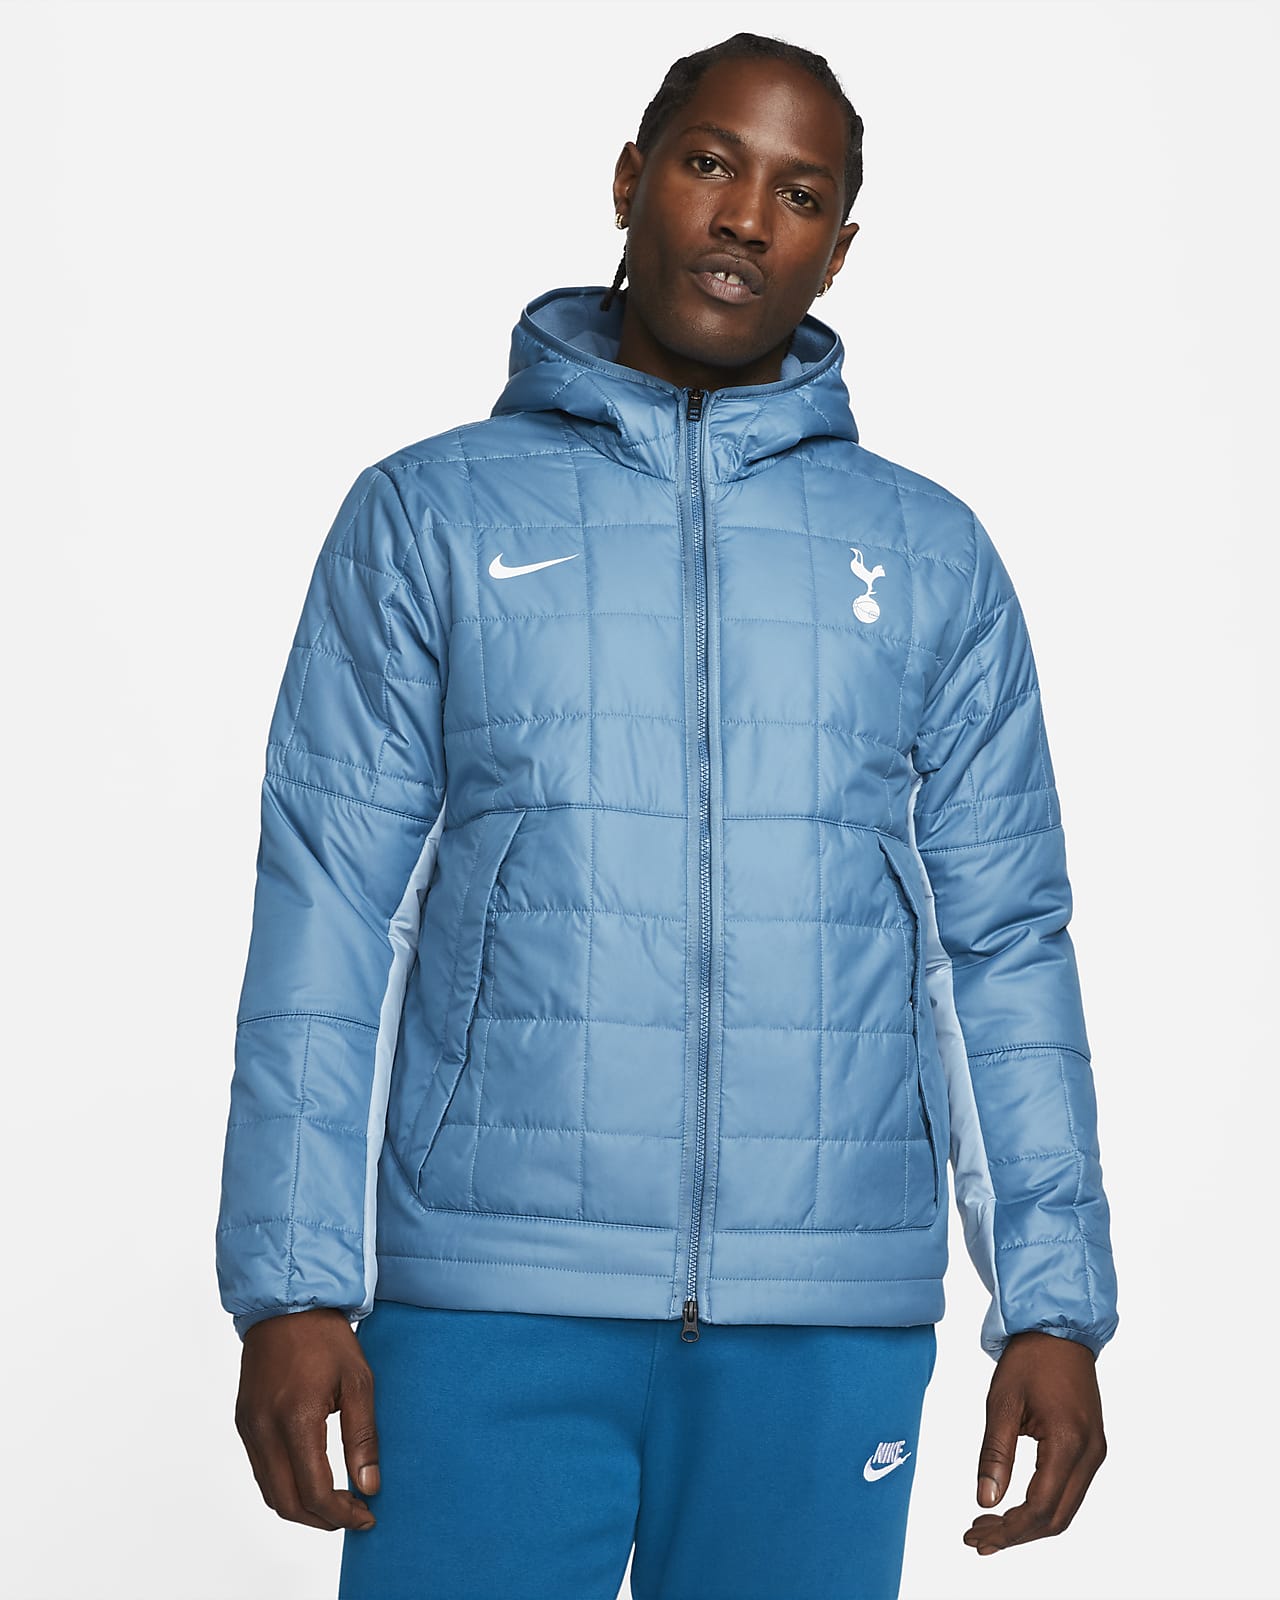 Veste à capuche doublée en Fleece Nike Tottenham Hotspur pour homme. Nike FR